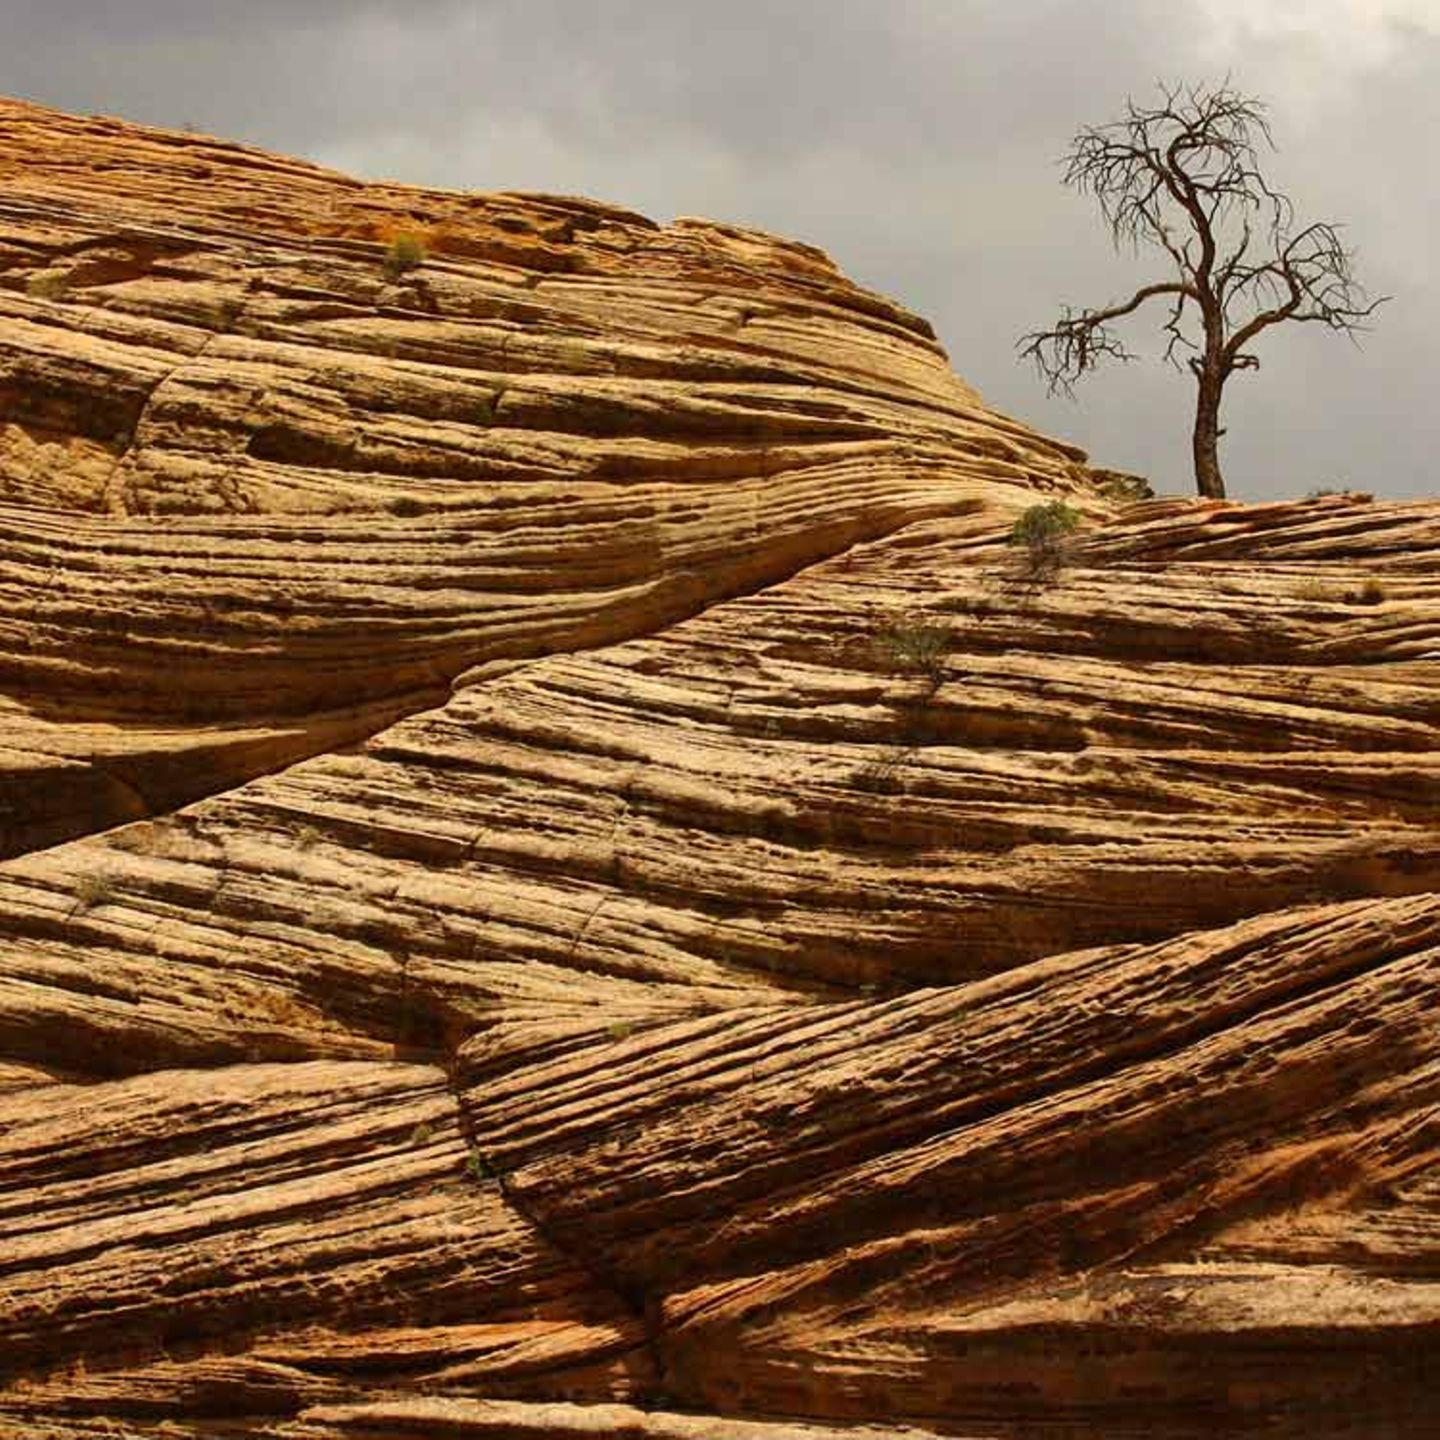 Baum auf Sandsteinklippe, USA